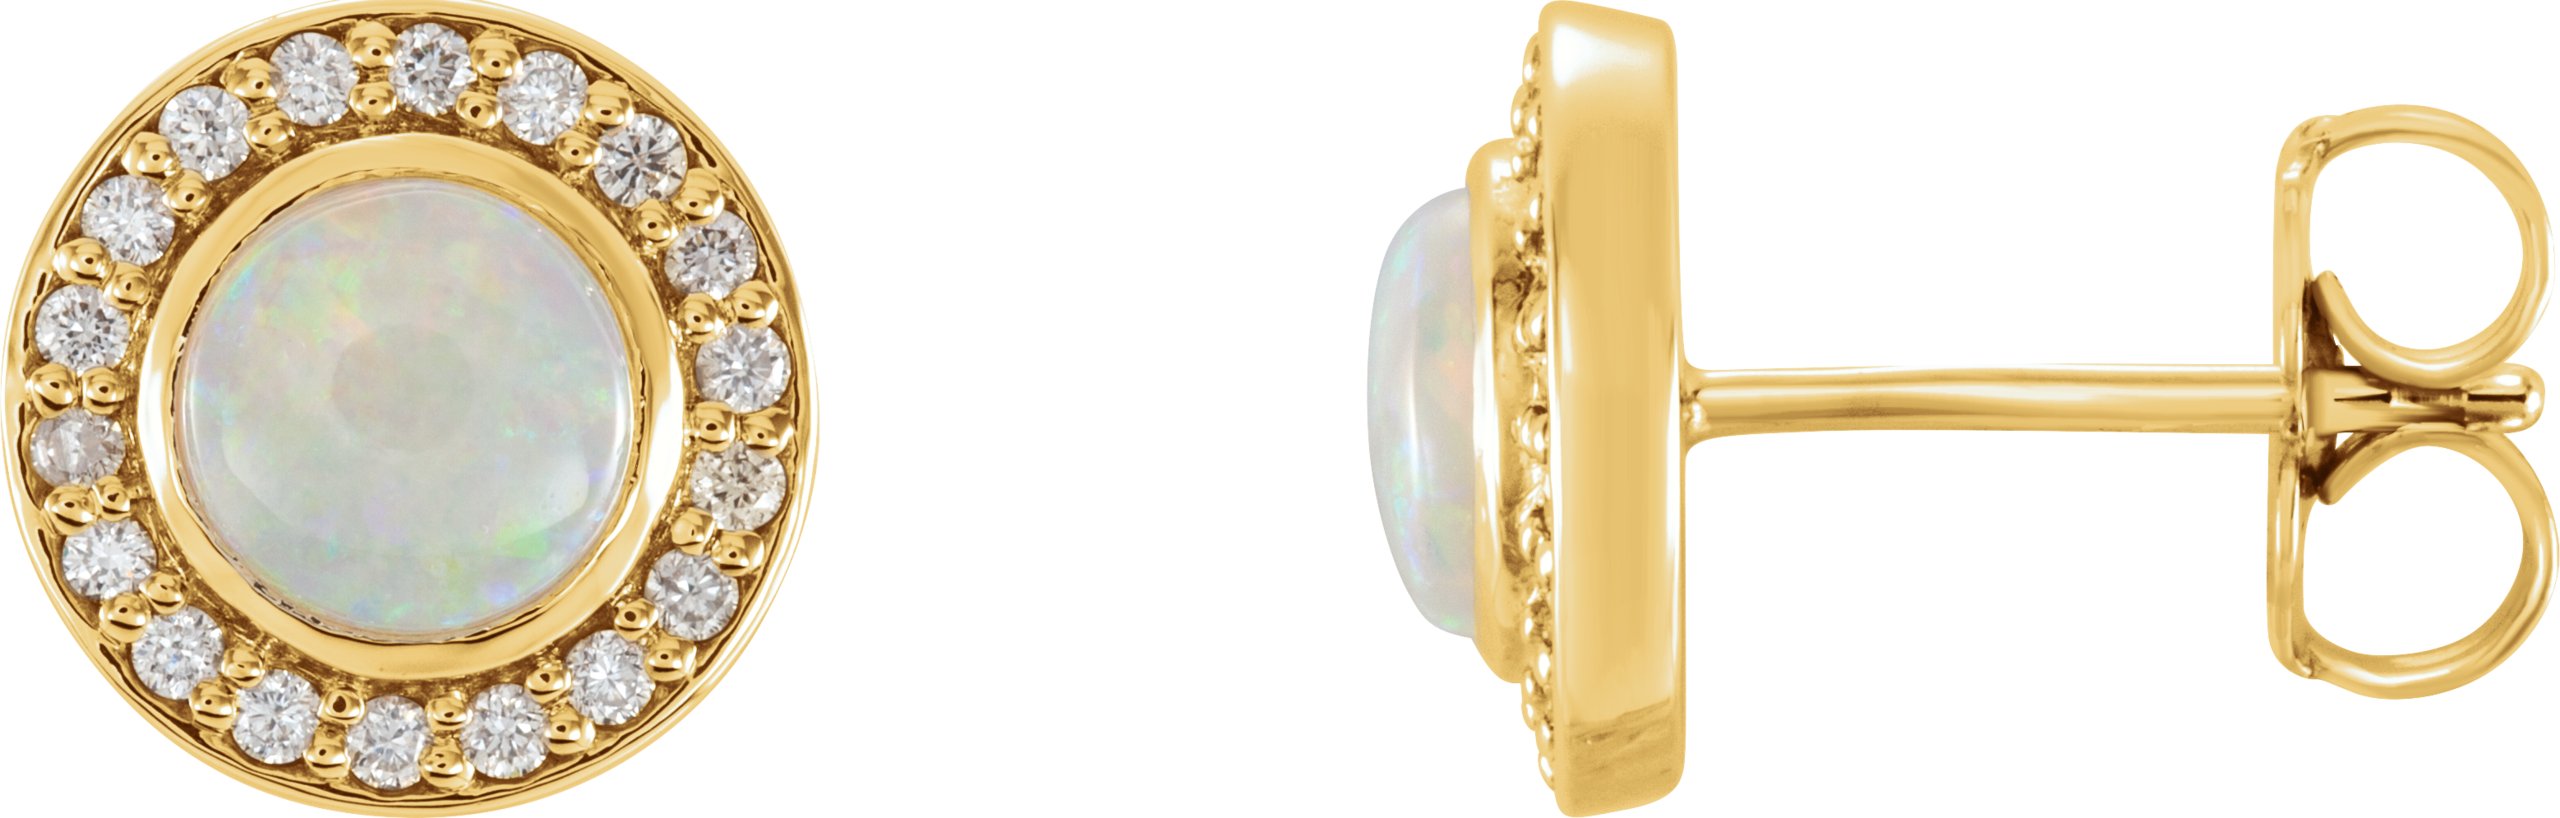 14K Yellow 6 mm Opal & 1/5 CTW Diamond Halo-Style Earrings